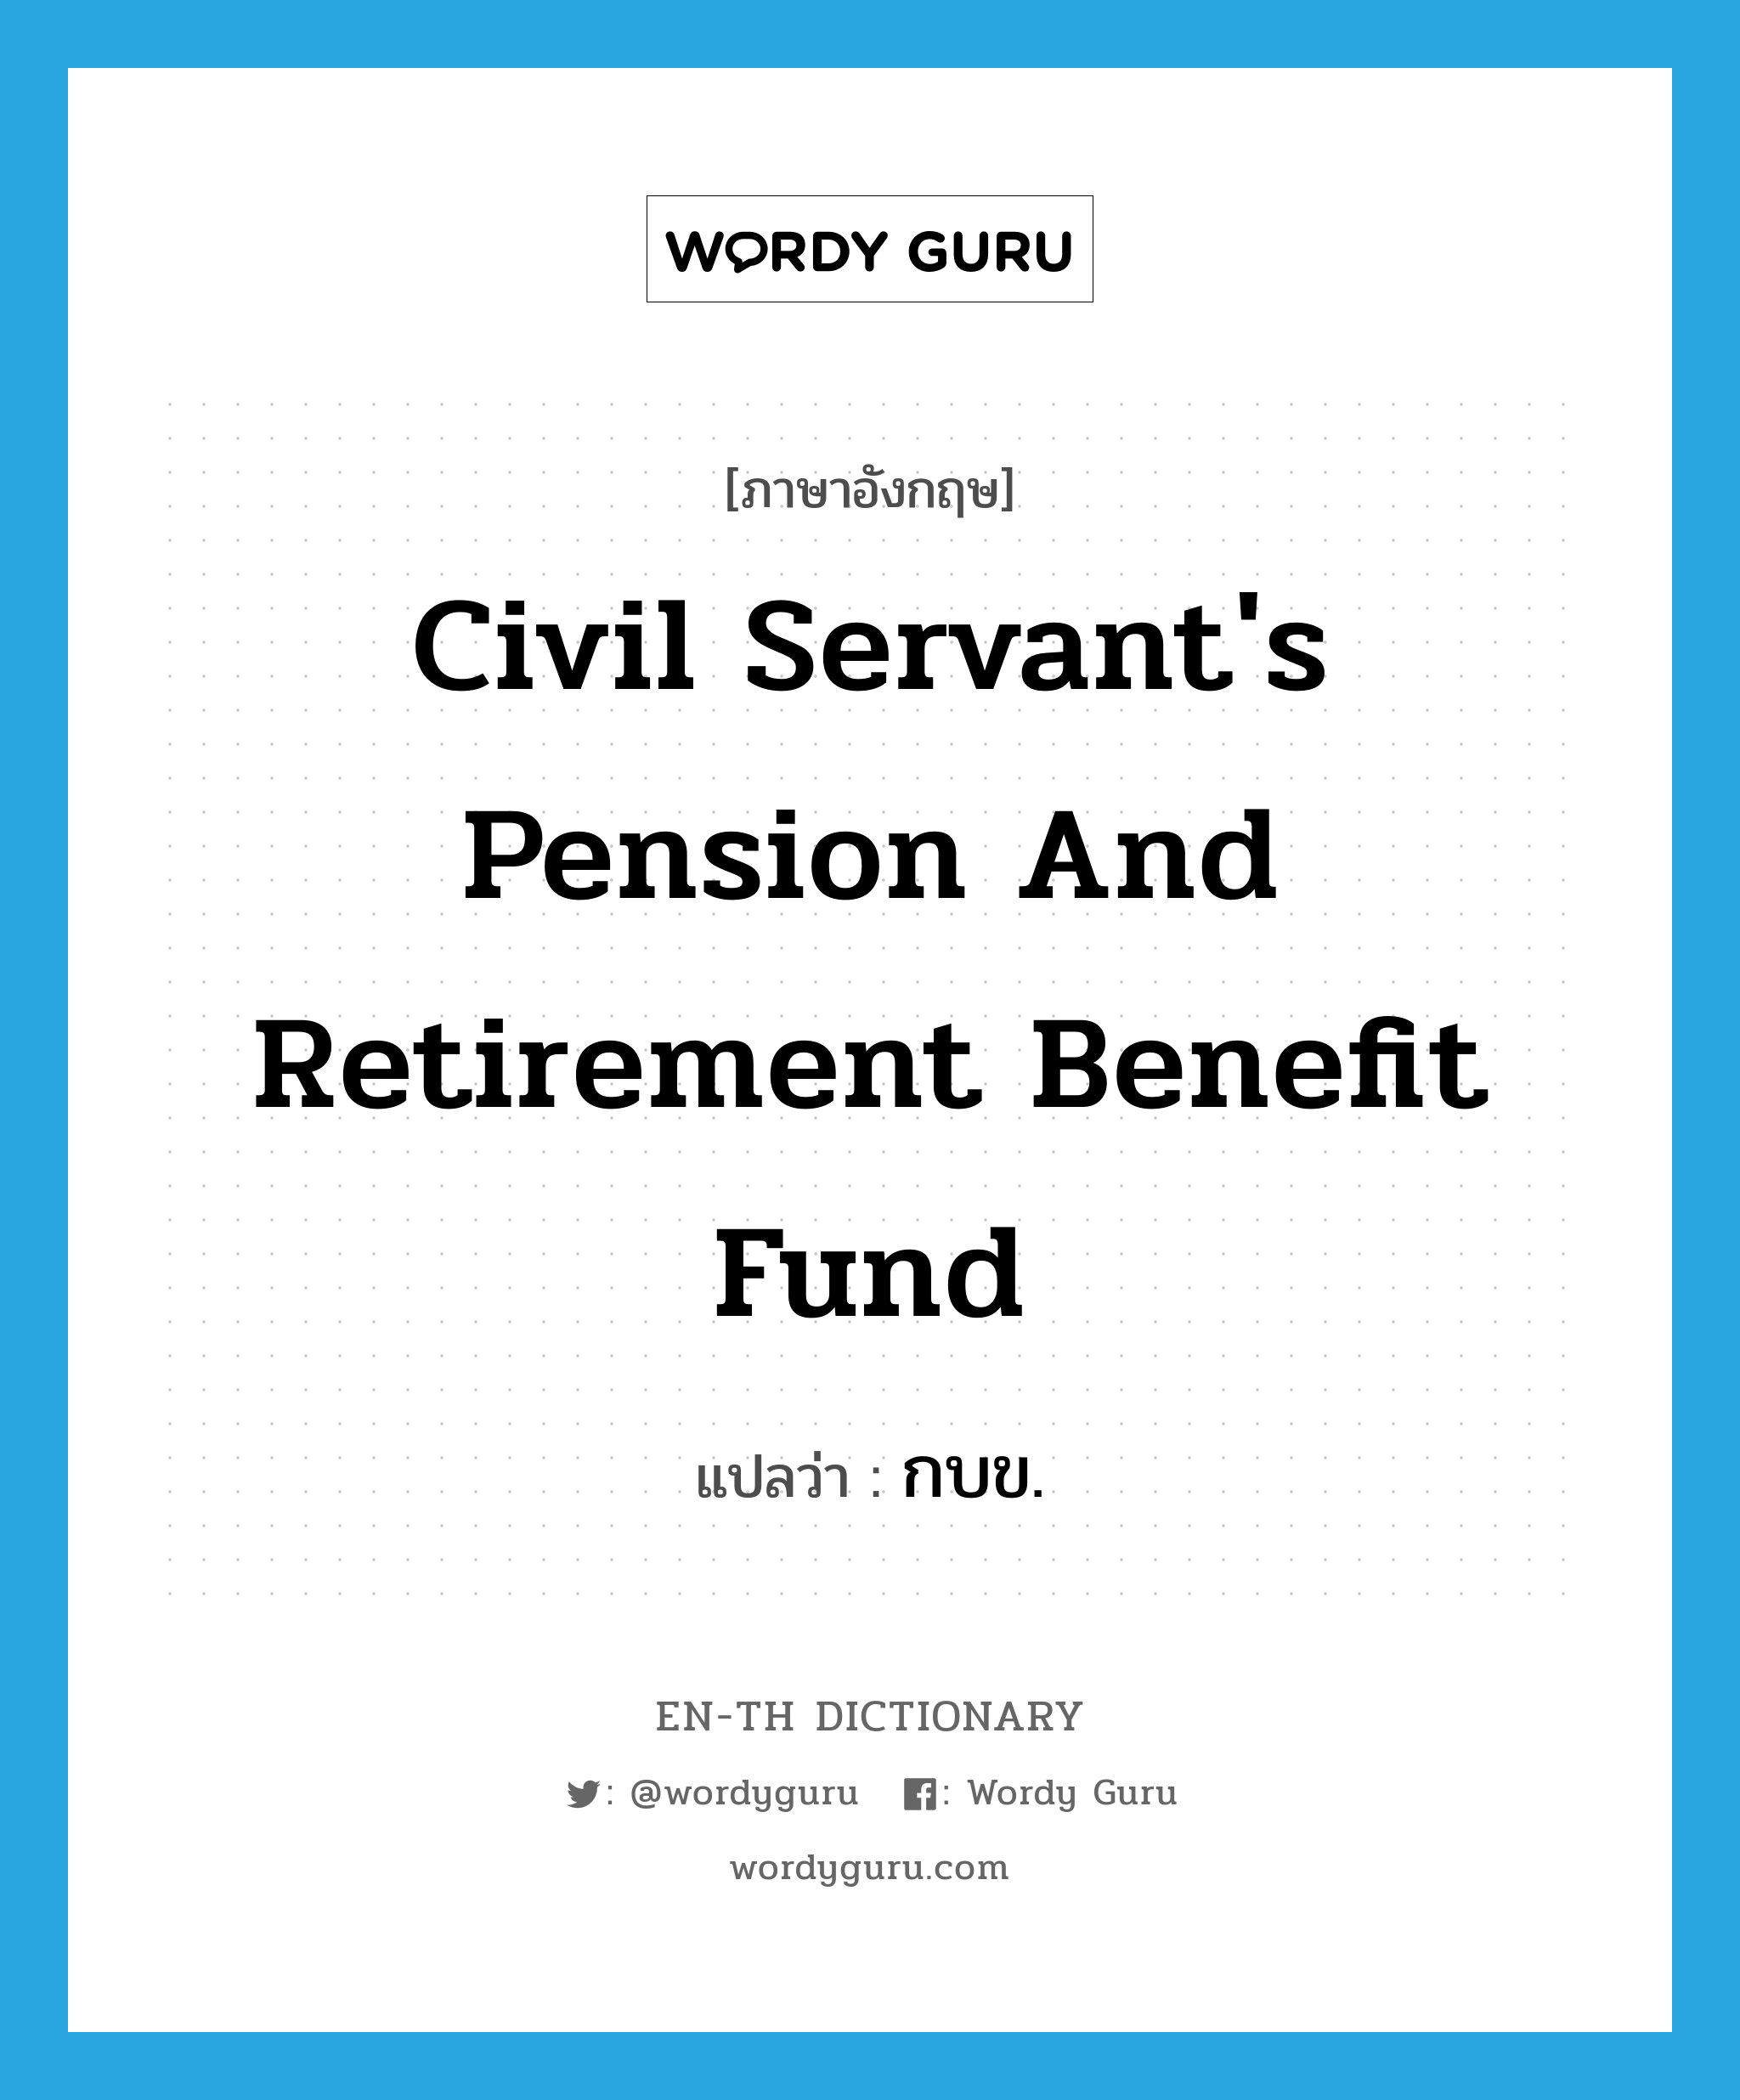 กบข. ภาษาอังกฤษ?, คำศัพท์ภาษาอังกฤษ กบข. แปลว่า Civil Servant's Pension and Retirement Benefit Fund ประเภท N หมวด N